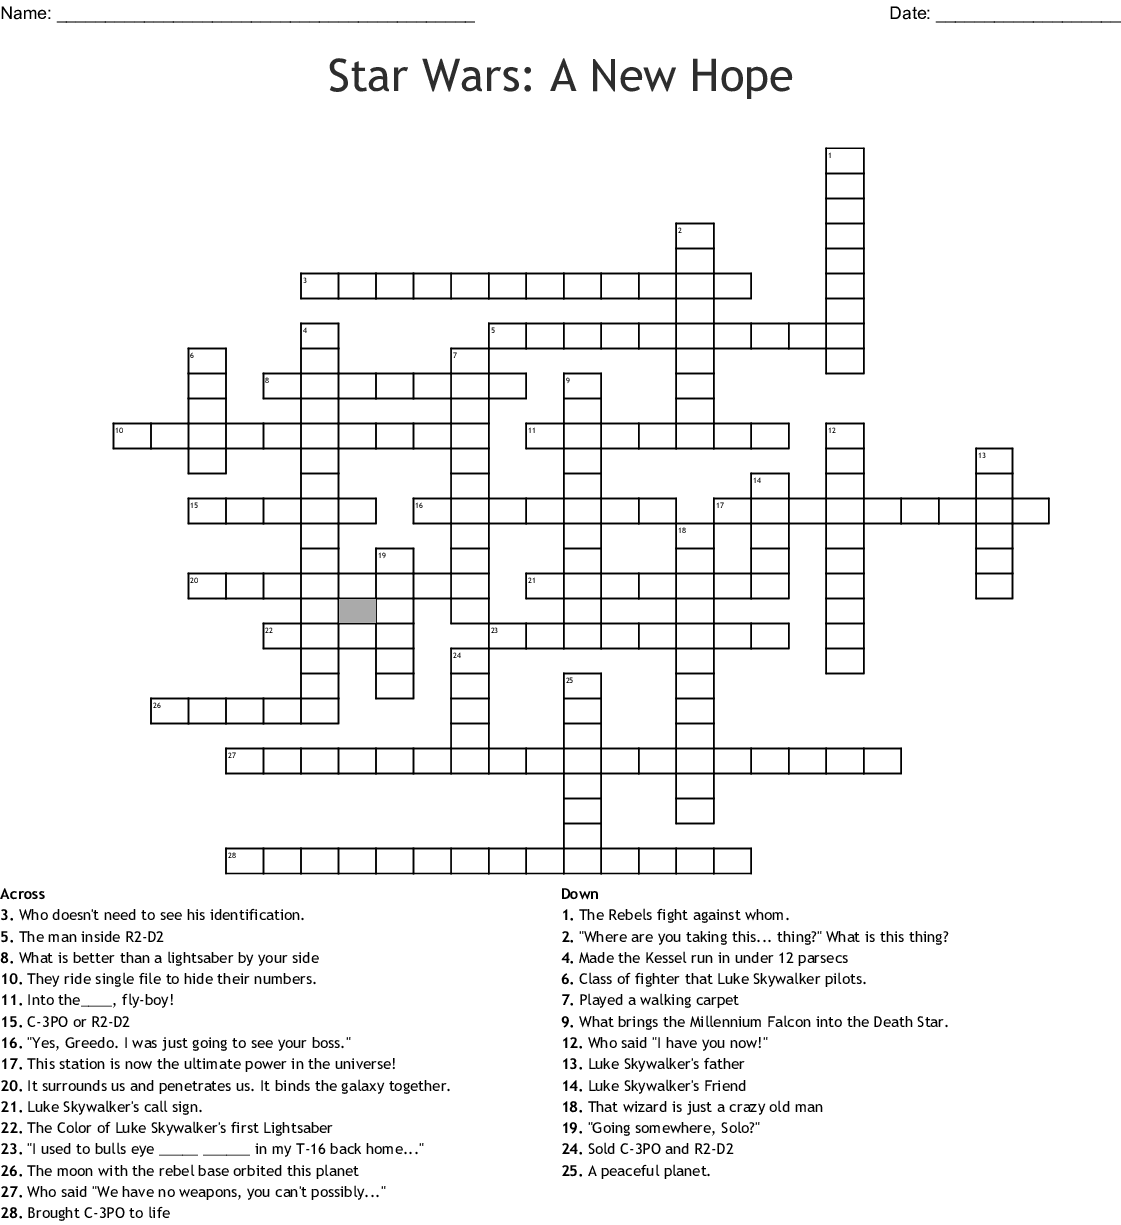 STAR WARS CROSSWORD WordMint James Crossword Puzzles